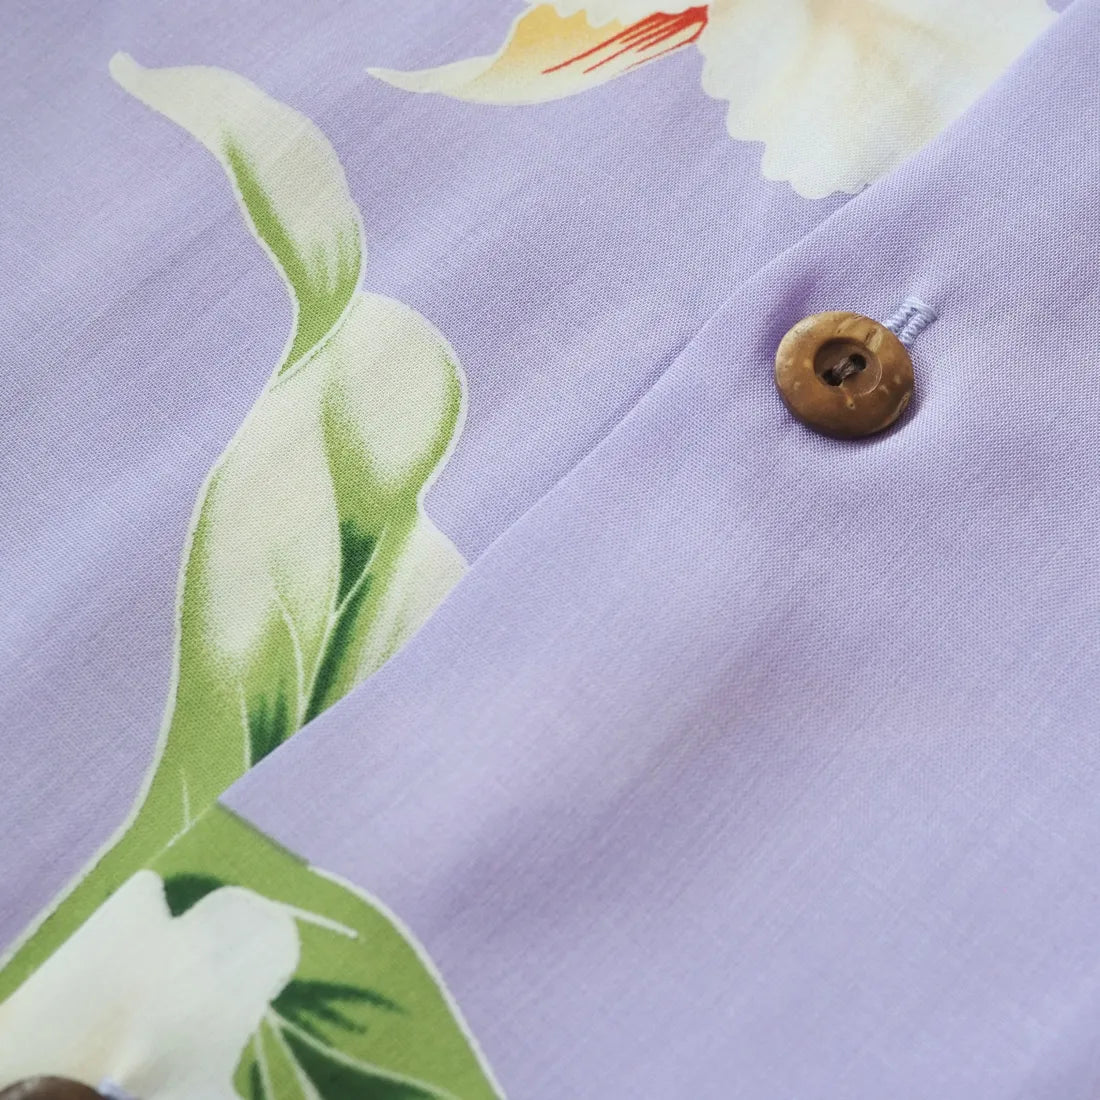 Mele Purple Hawaiian Rayon Shirt - Made In Hawaii